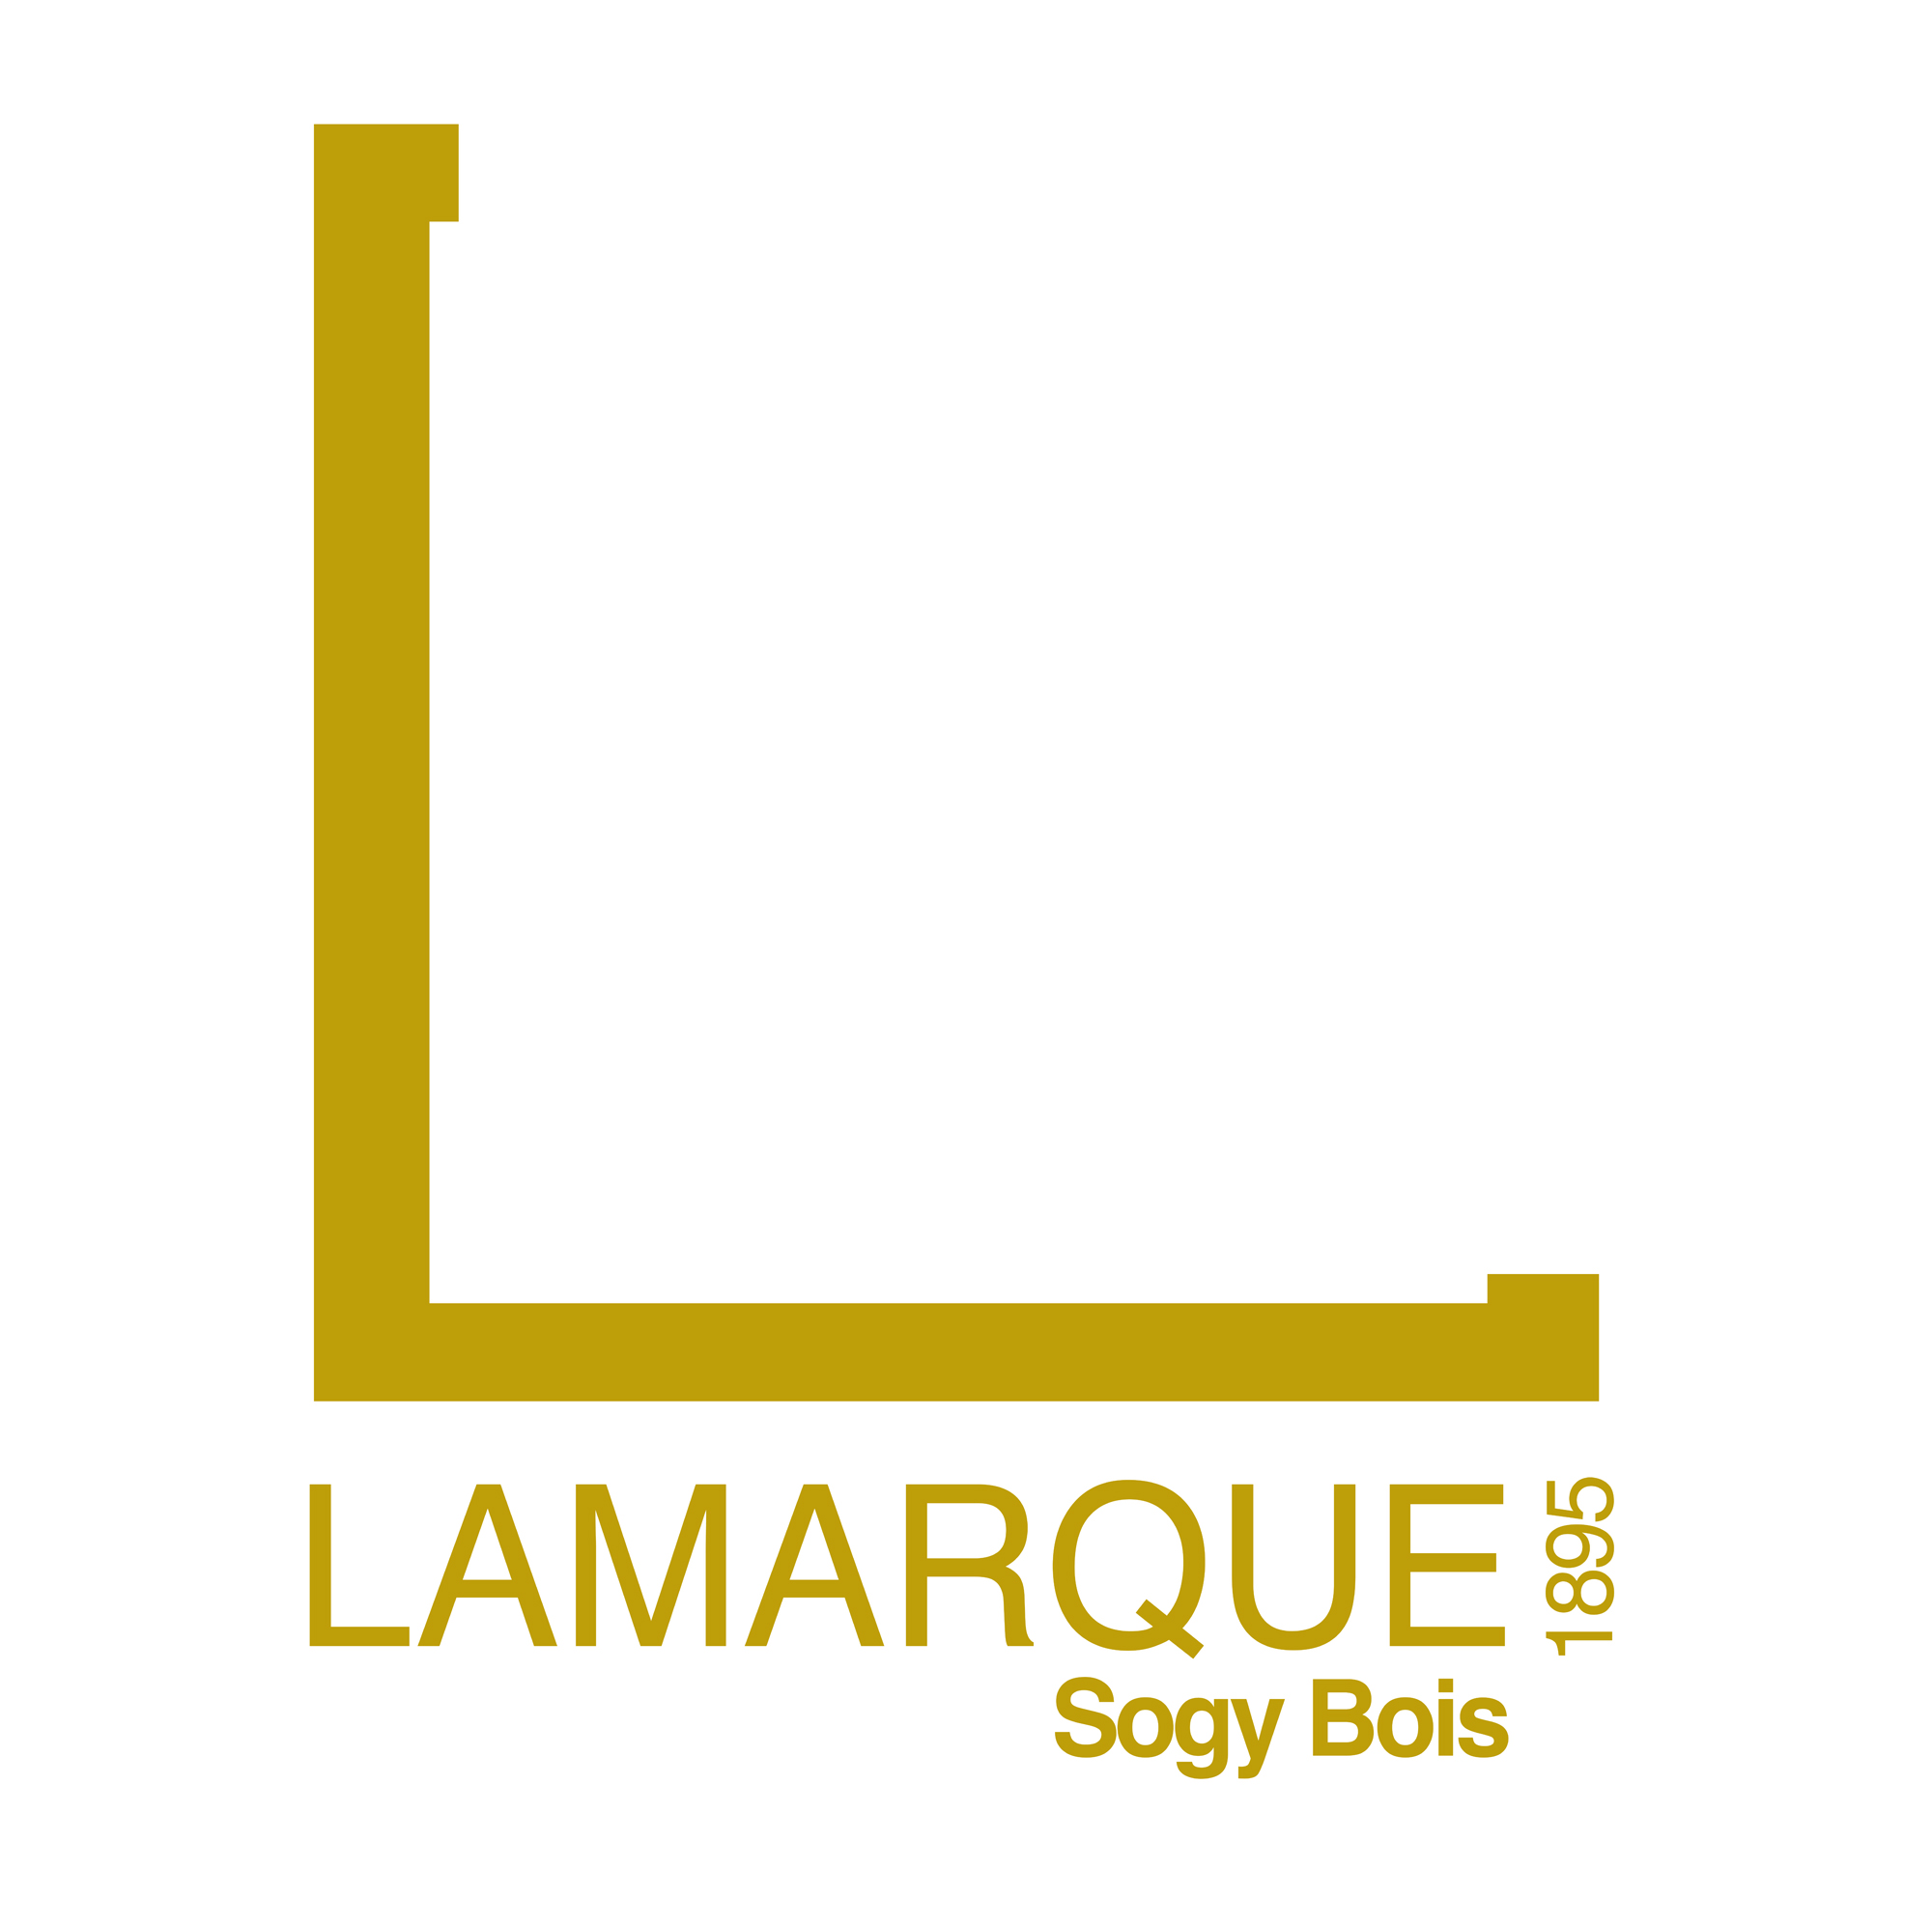 LAMARQUE SOGY BOIS